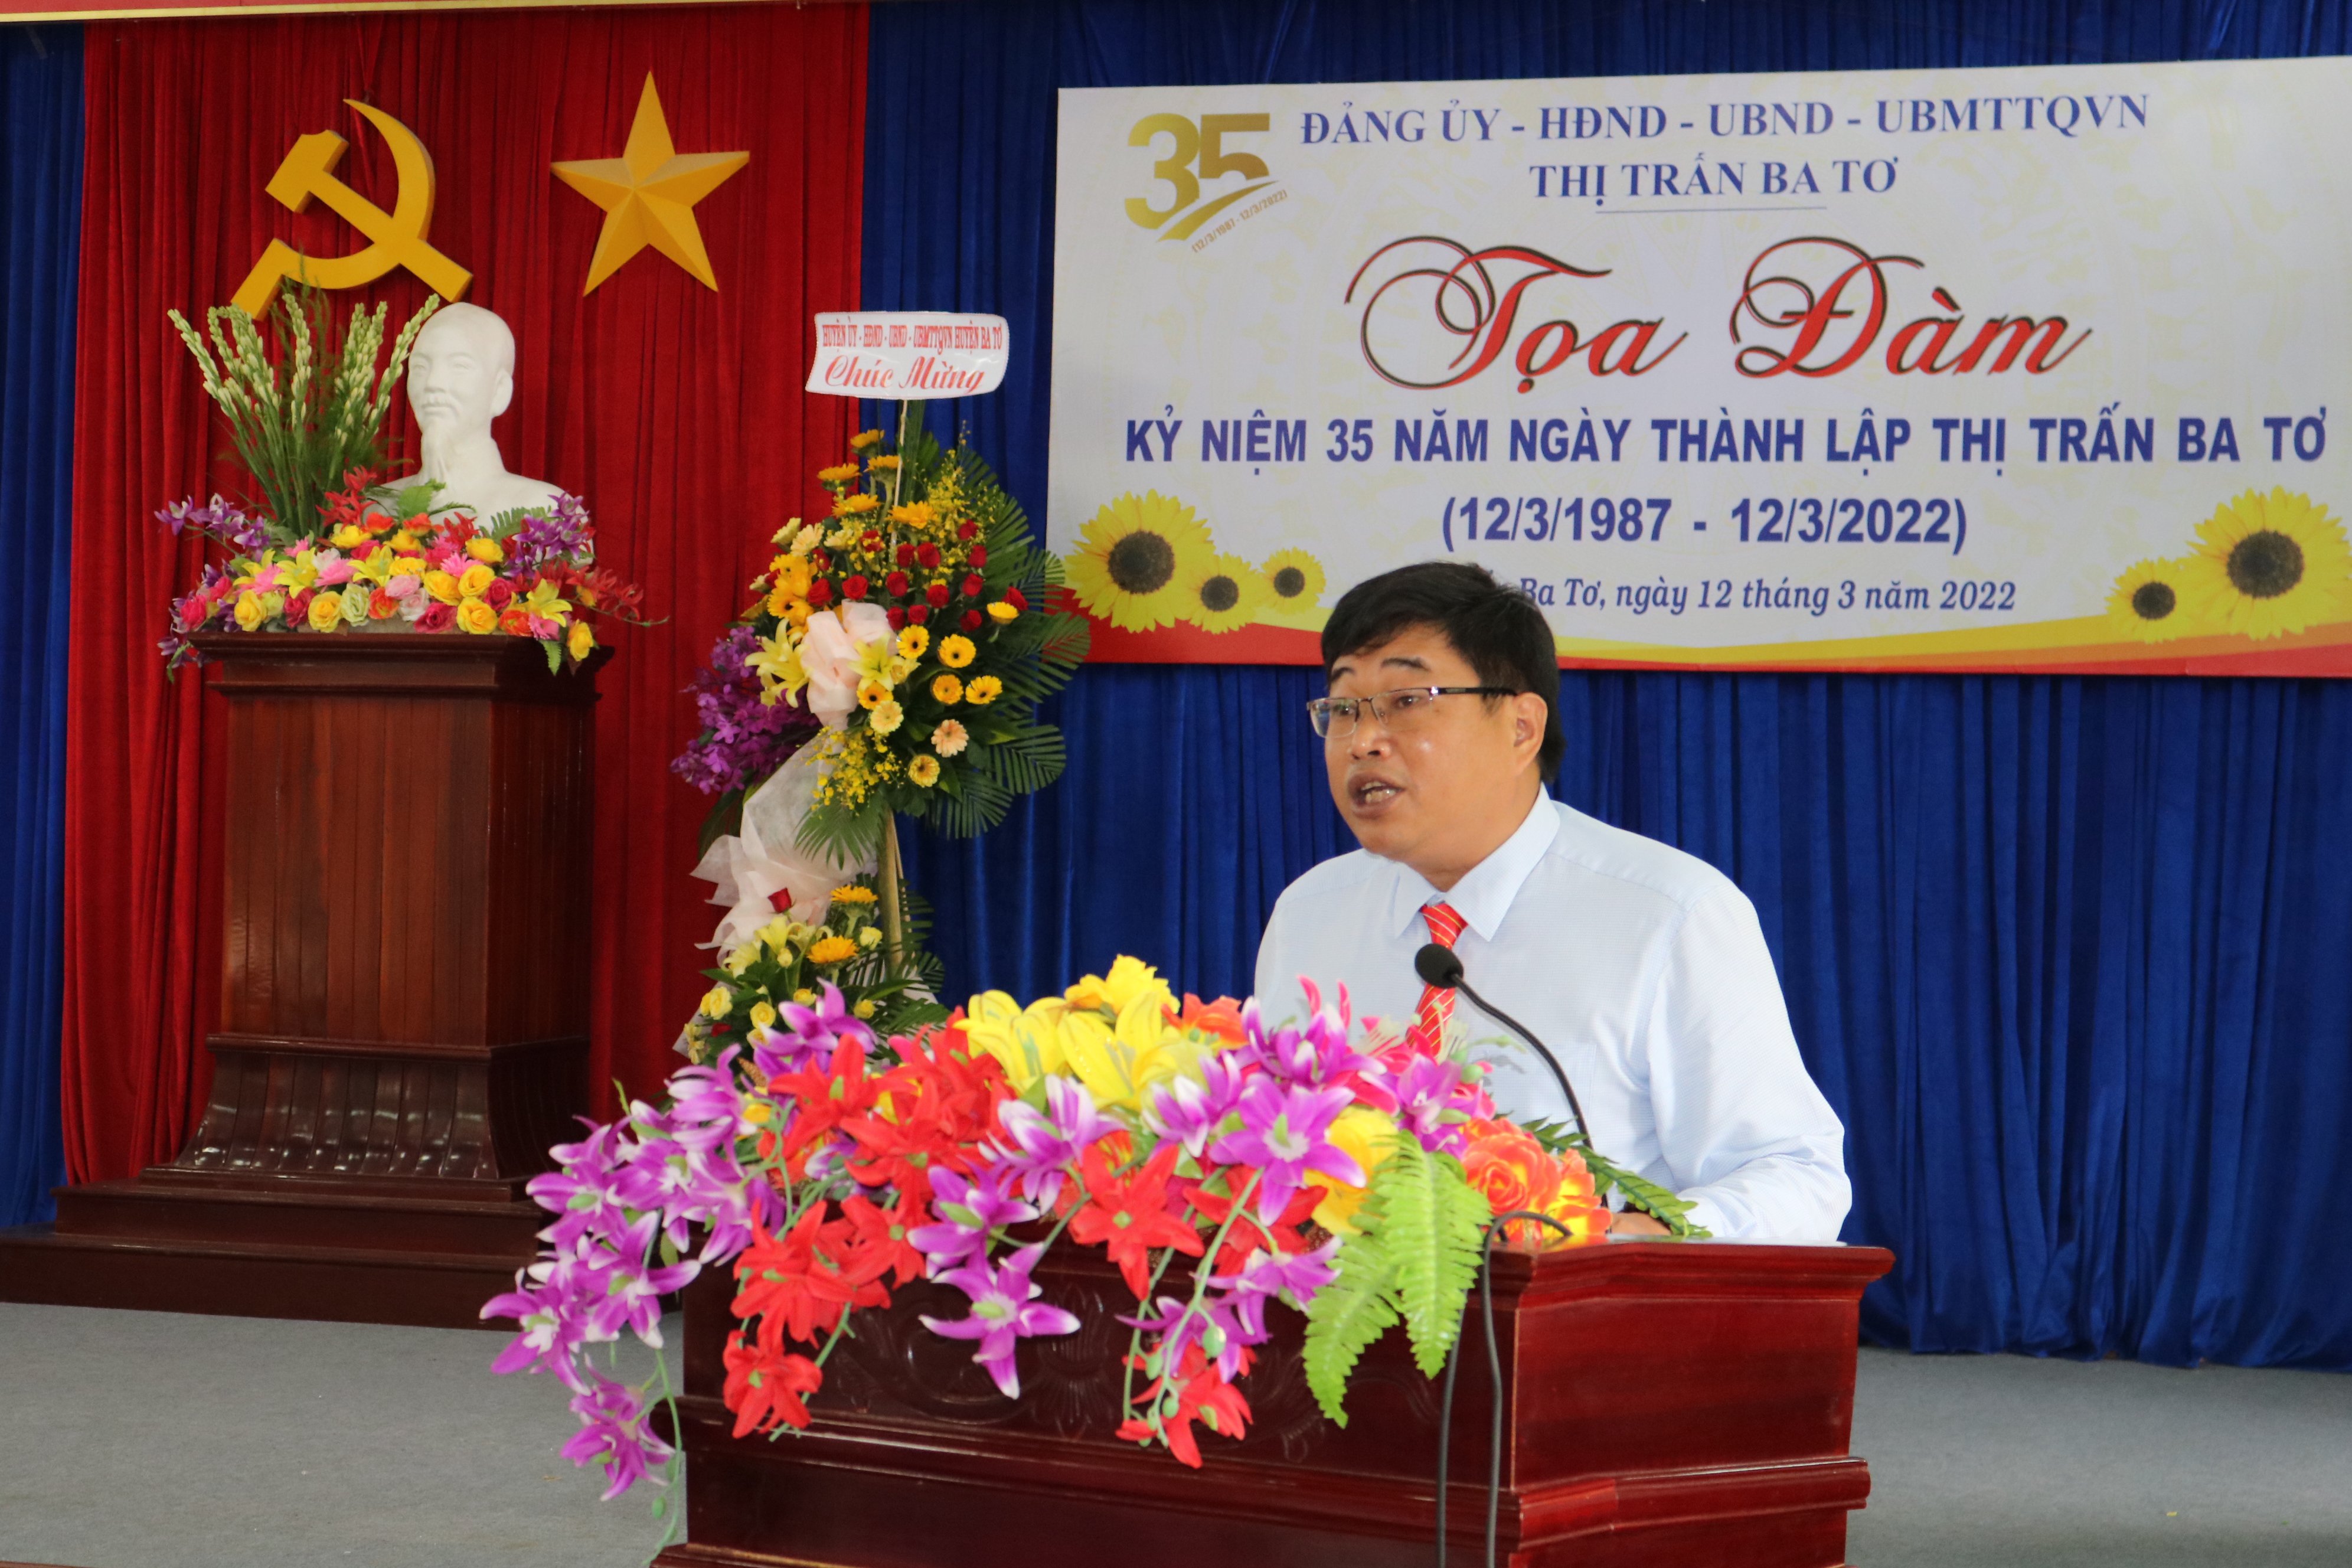 Đồng chí Nguyễn Hồng Quân, Huyện ủy viên - Bí thư Đảng ủy thị trấn cùng với Hội nghị ôn lại kỷ niệm 35 năm thành lập và phát triển thị trấn Ba Tơ